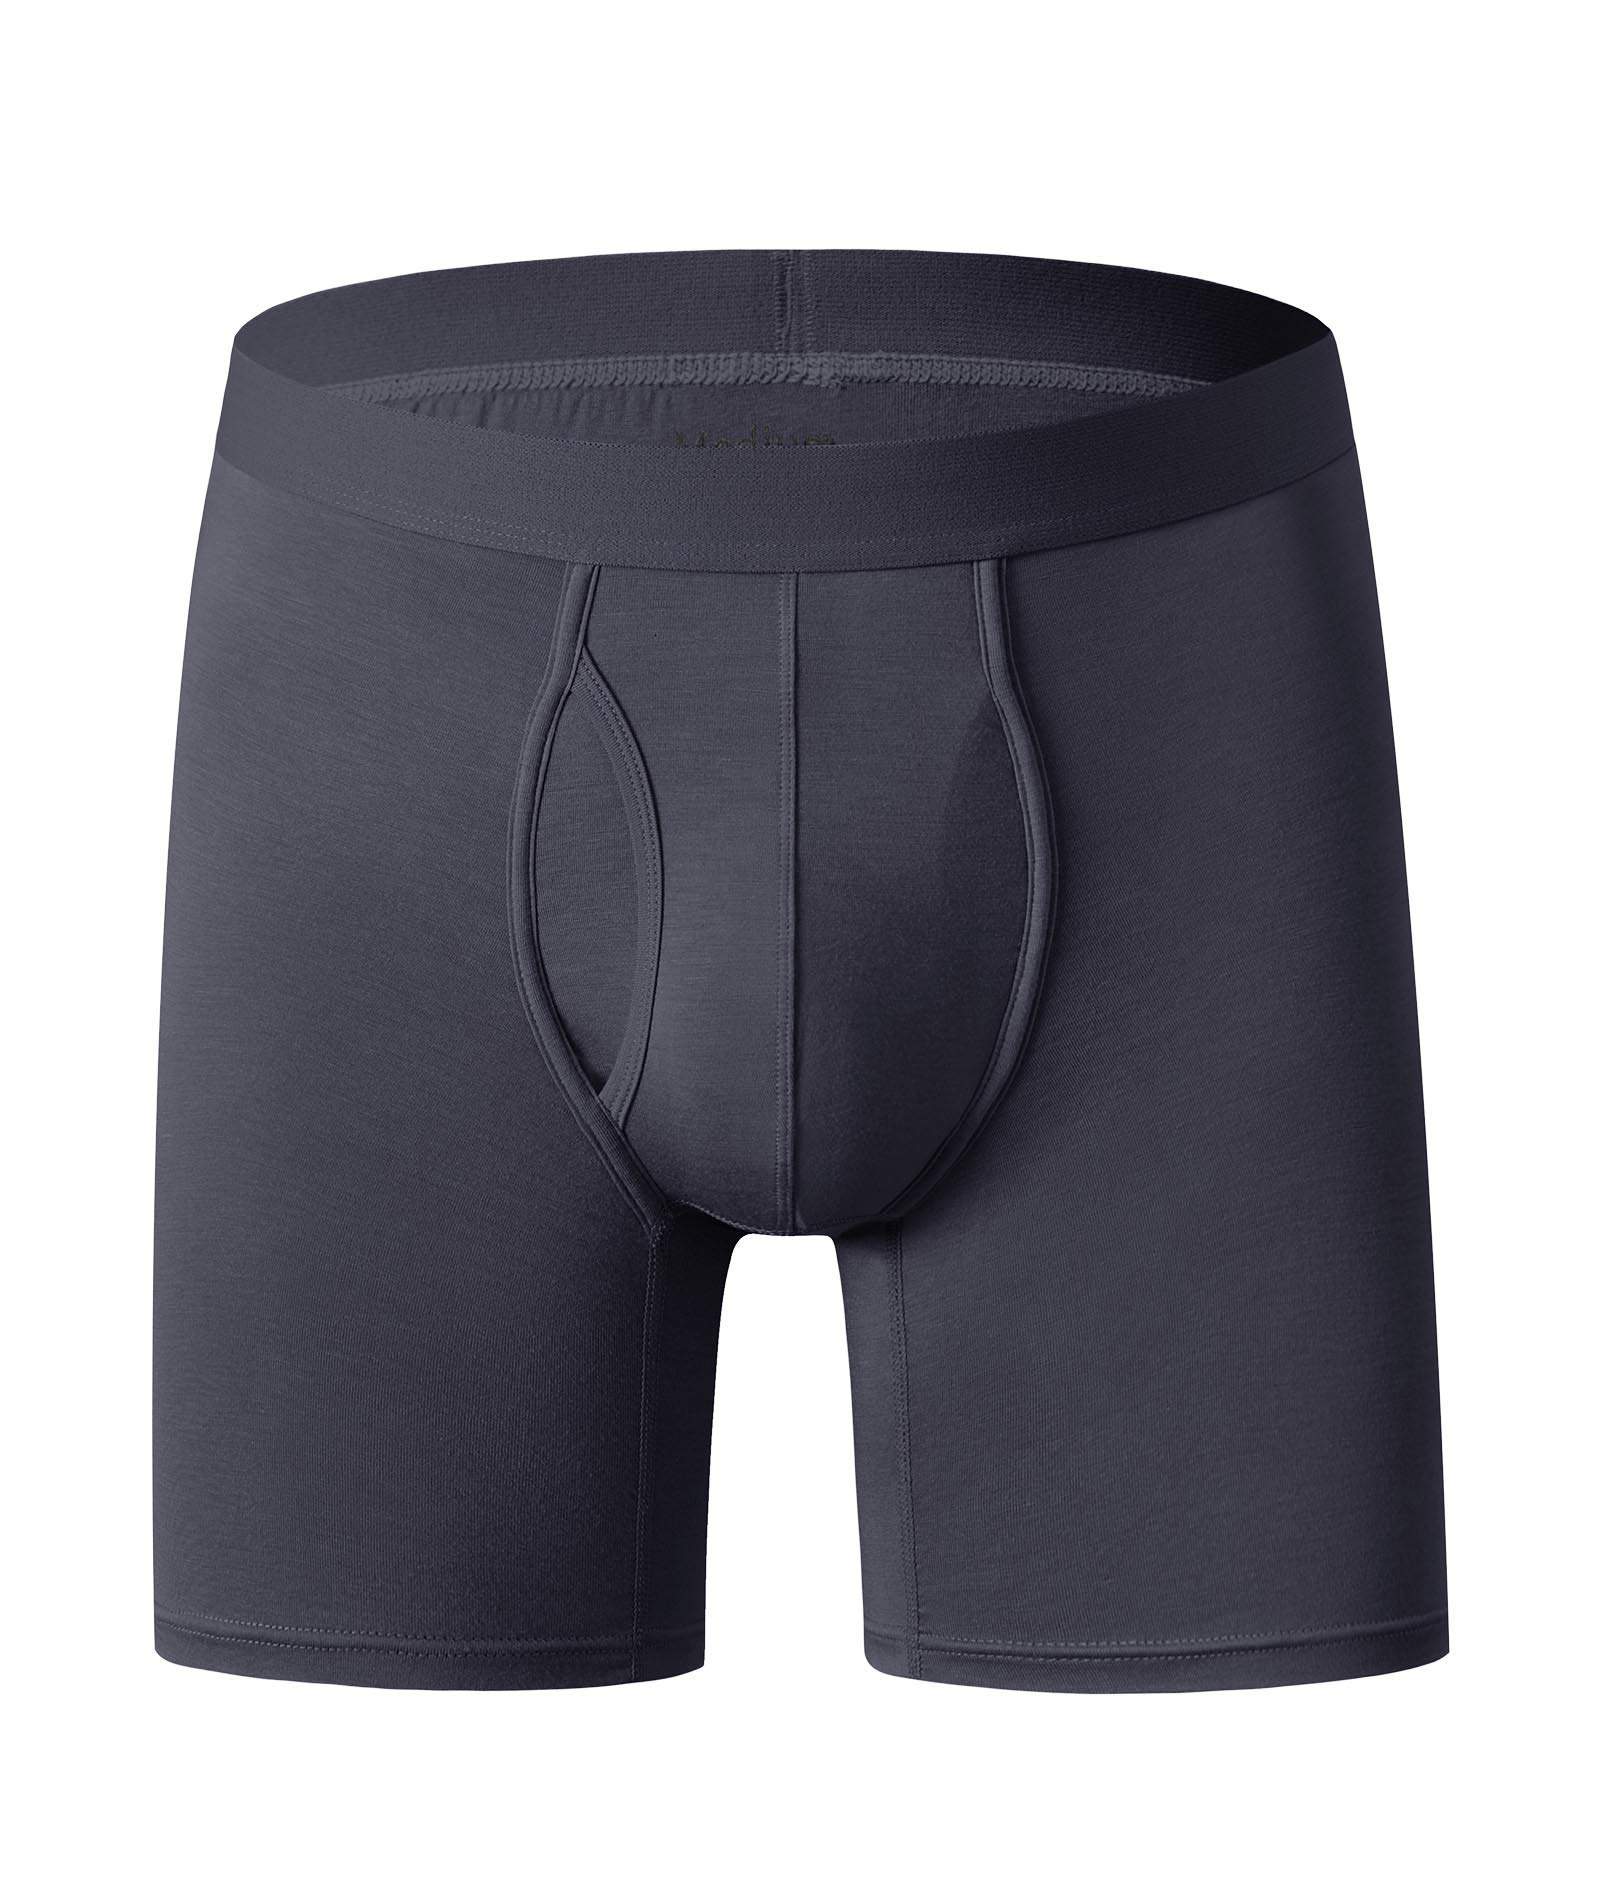 men's underwear (3)